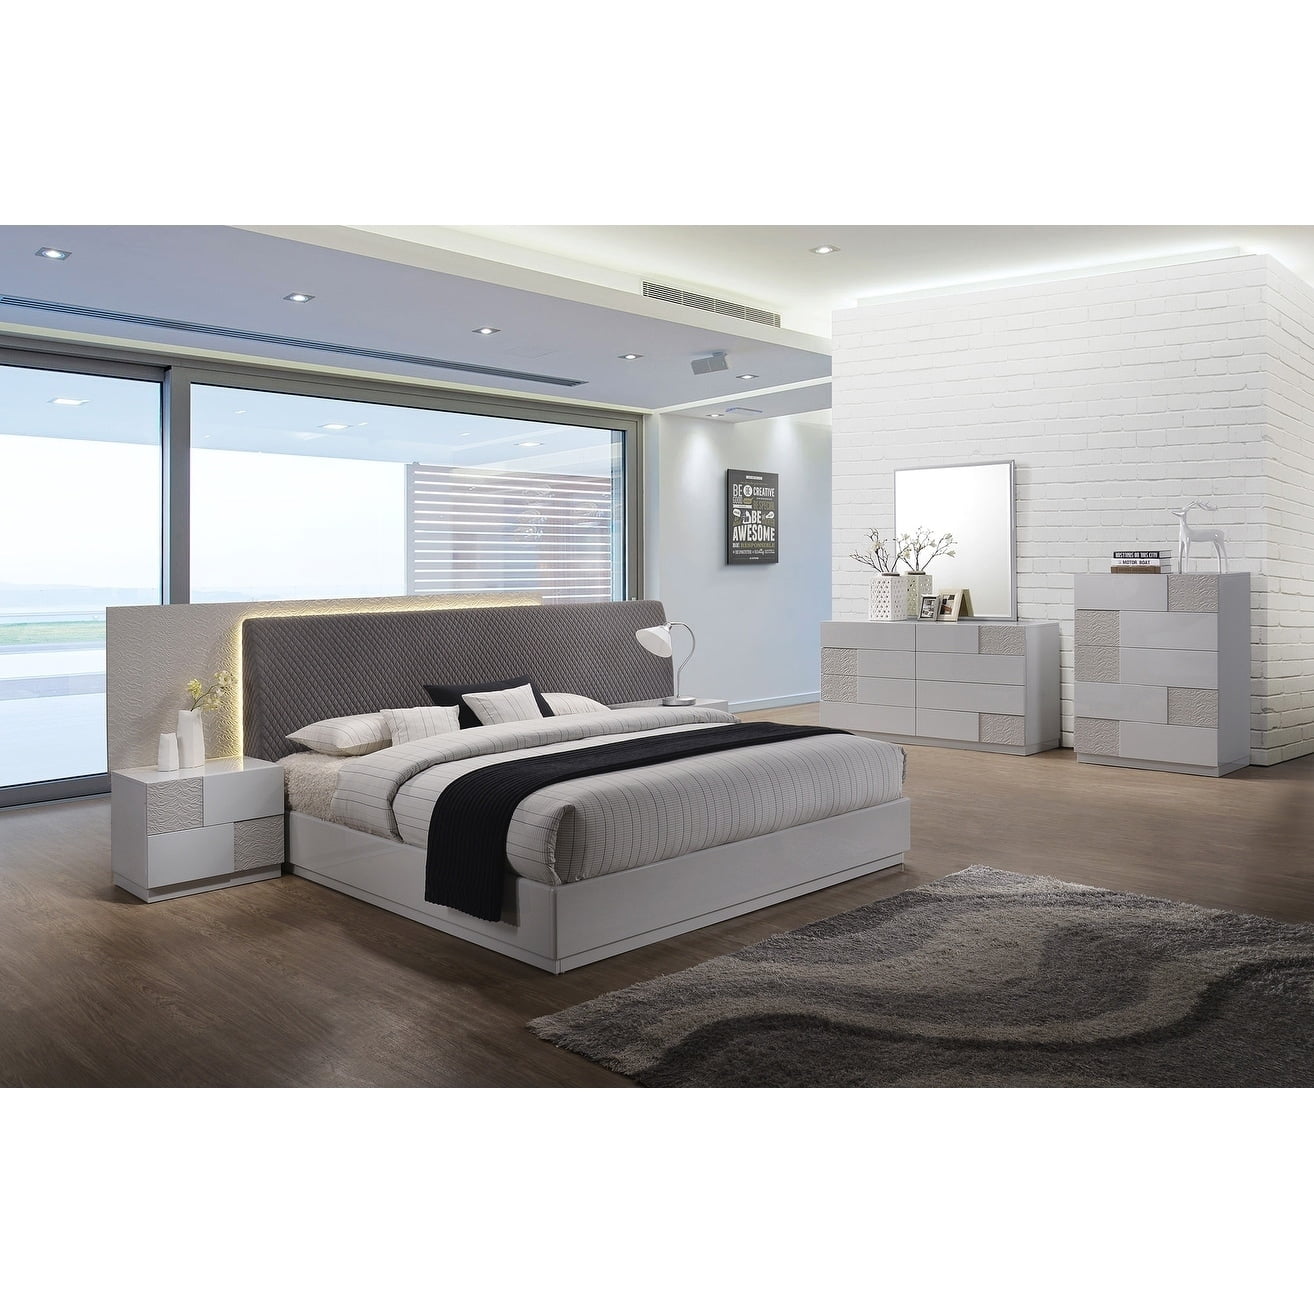 Master Bedroom Sets - High end master bedroom set, platform bed. - See more ideas about bedroom set, bedroom furniture sets, bedroom sets.